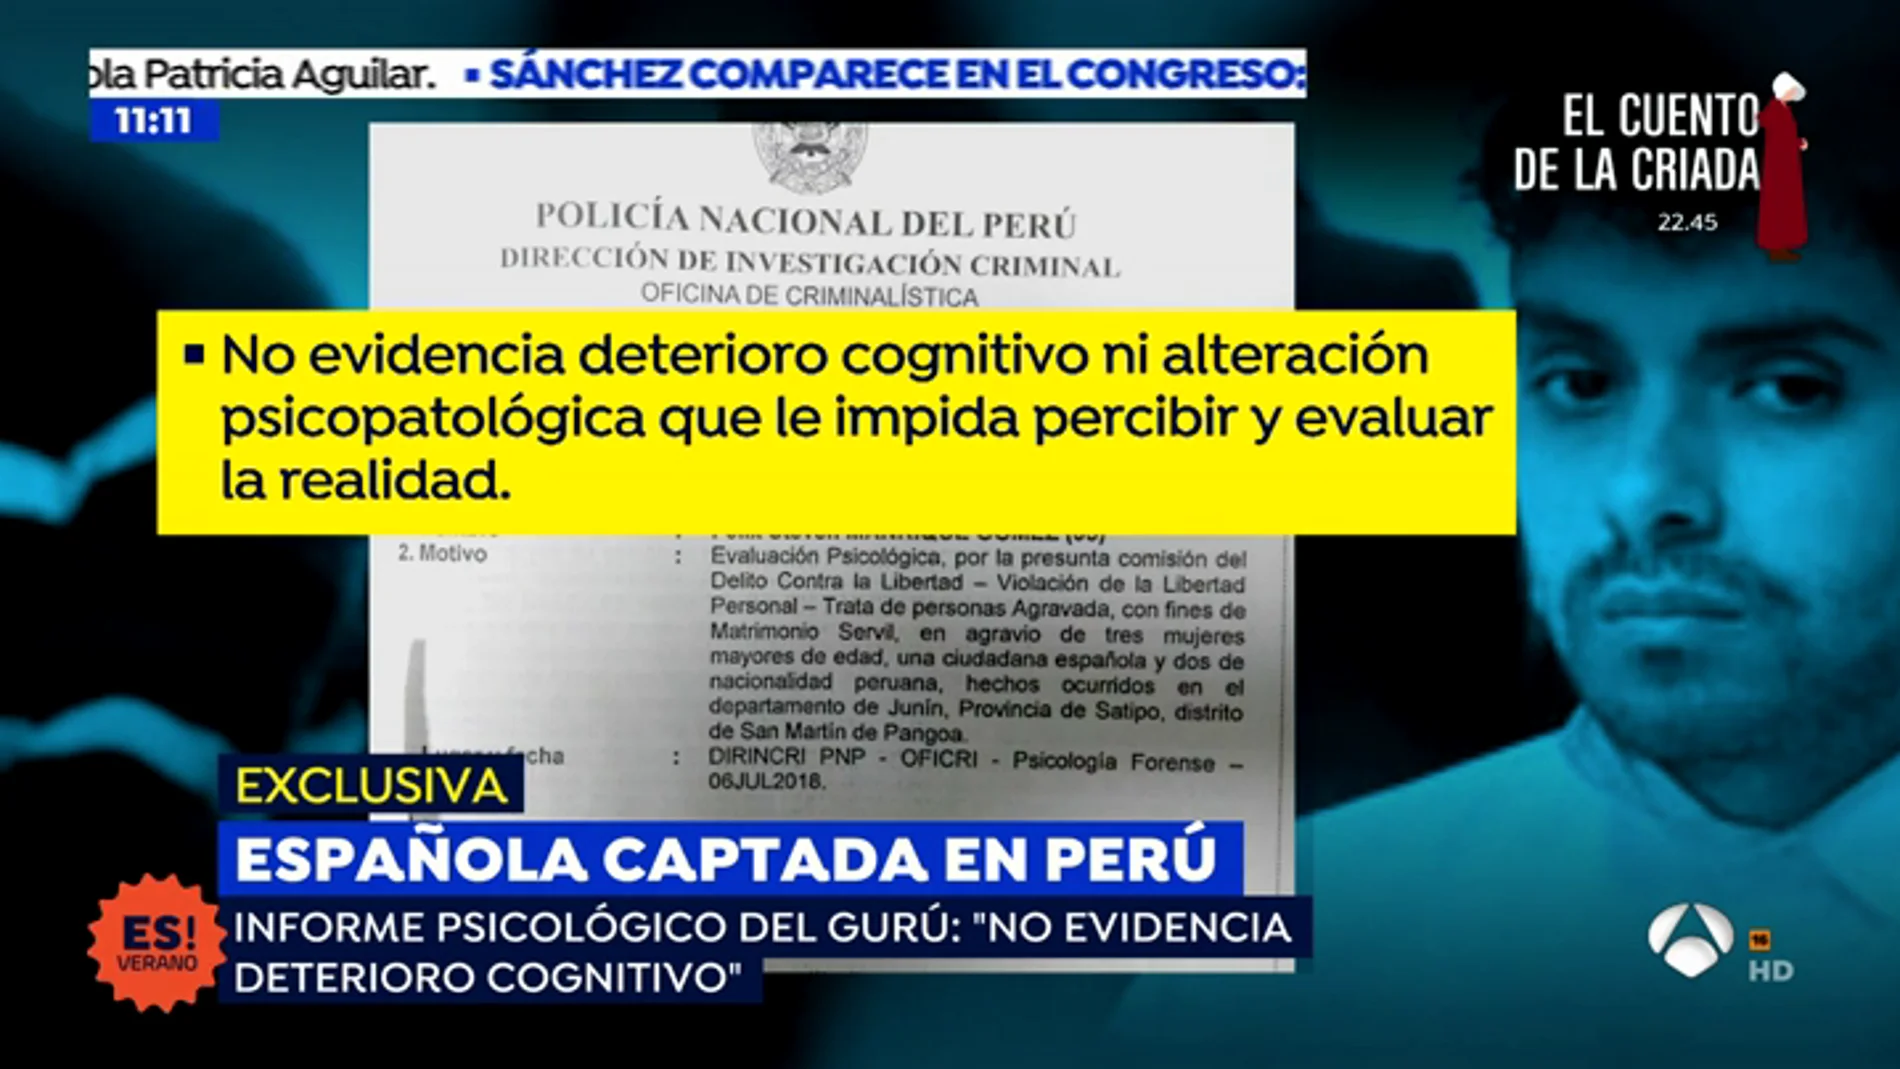 EXCLUSIVA: El informe psicológico del gurú que capto a Patricia Aguilar: "está completamente cuerdo"